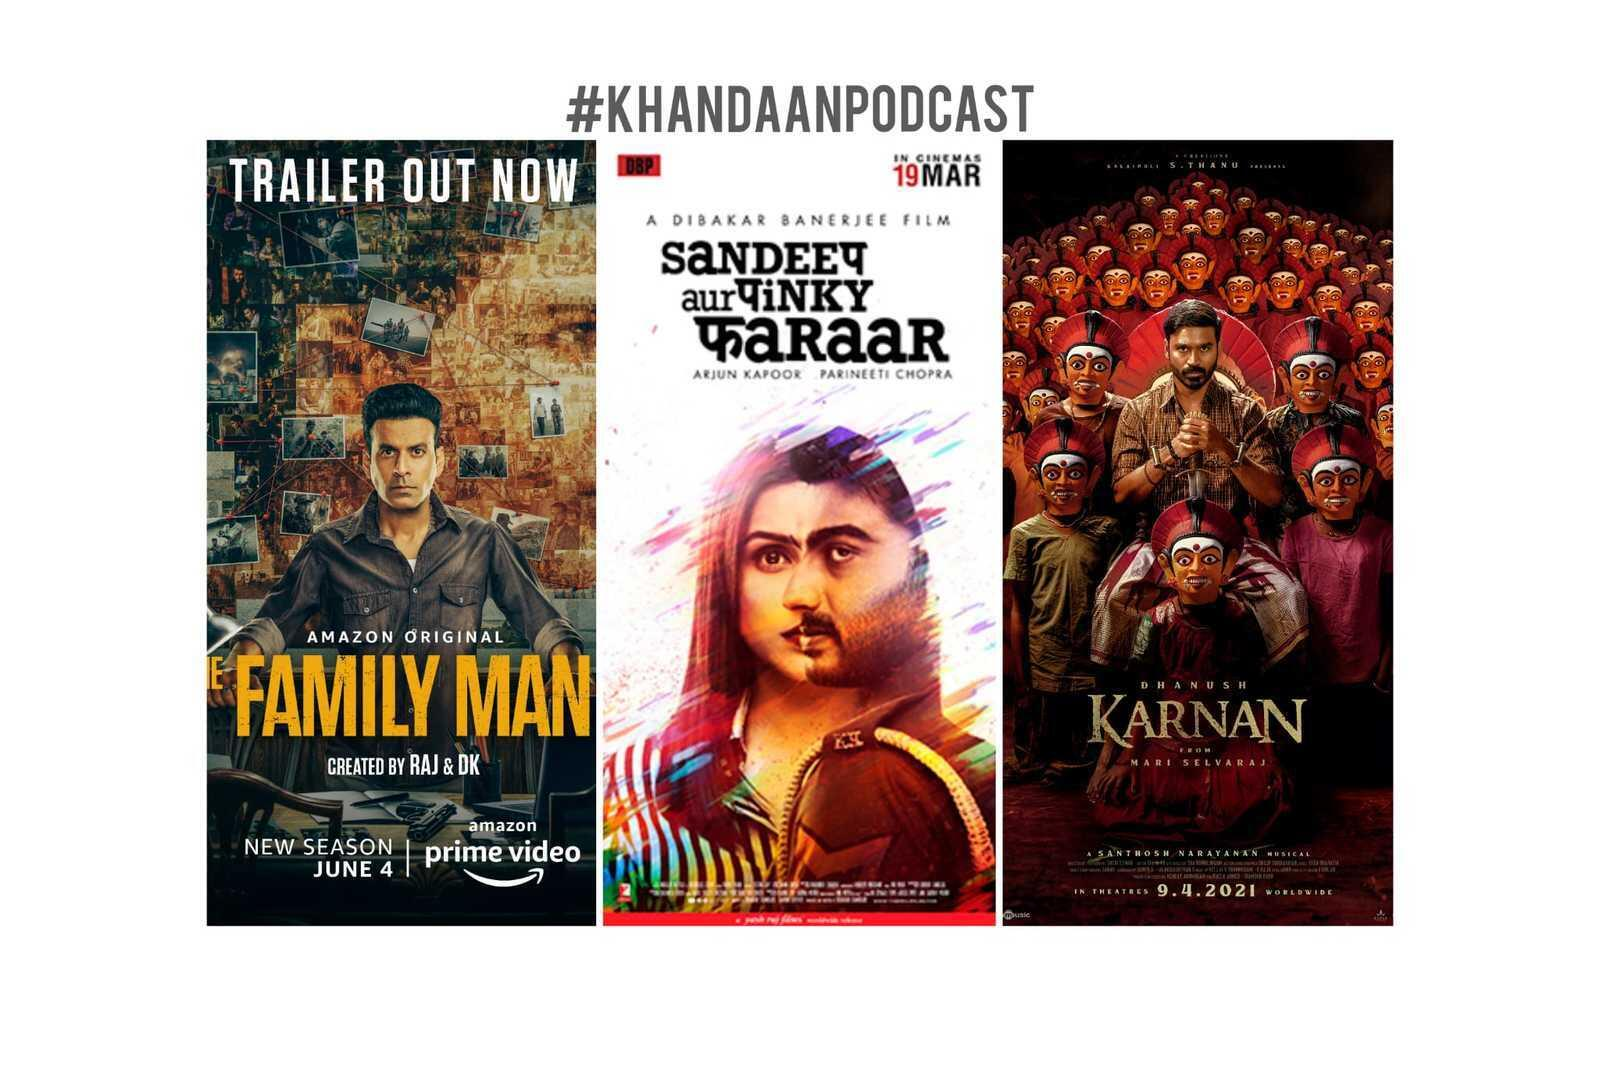 Ep 106- Sandeep Aur Pinky Faraar, Karnan, The Family Man S2 Trailer